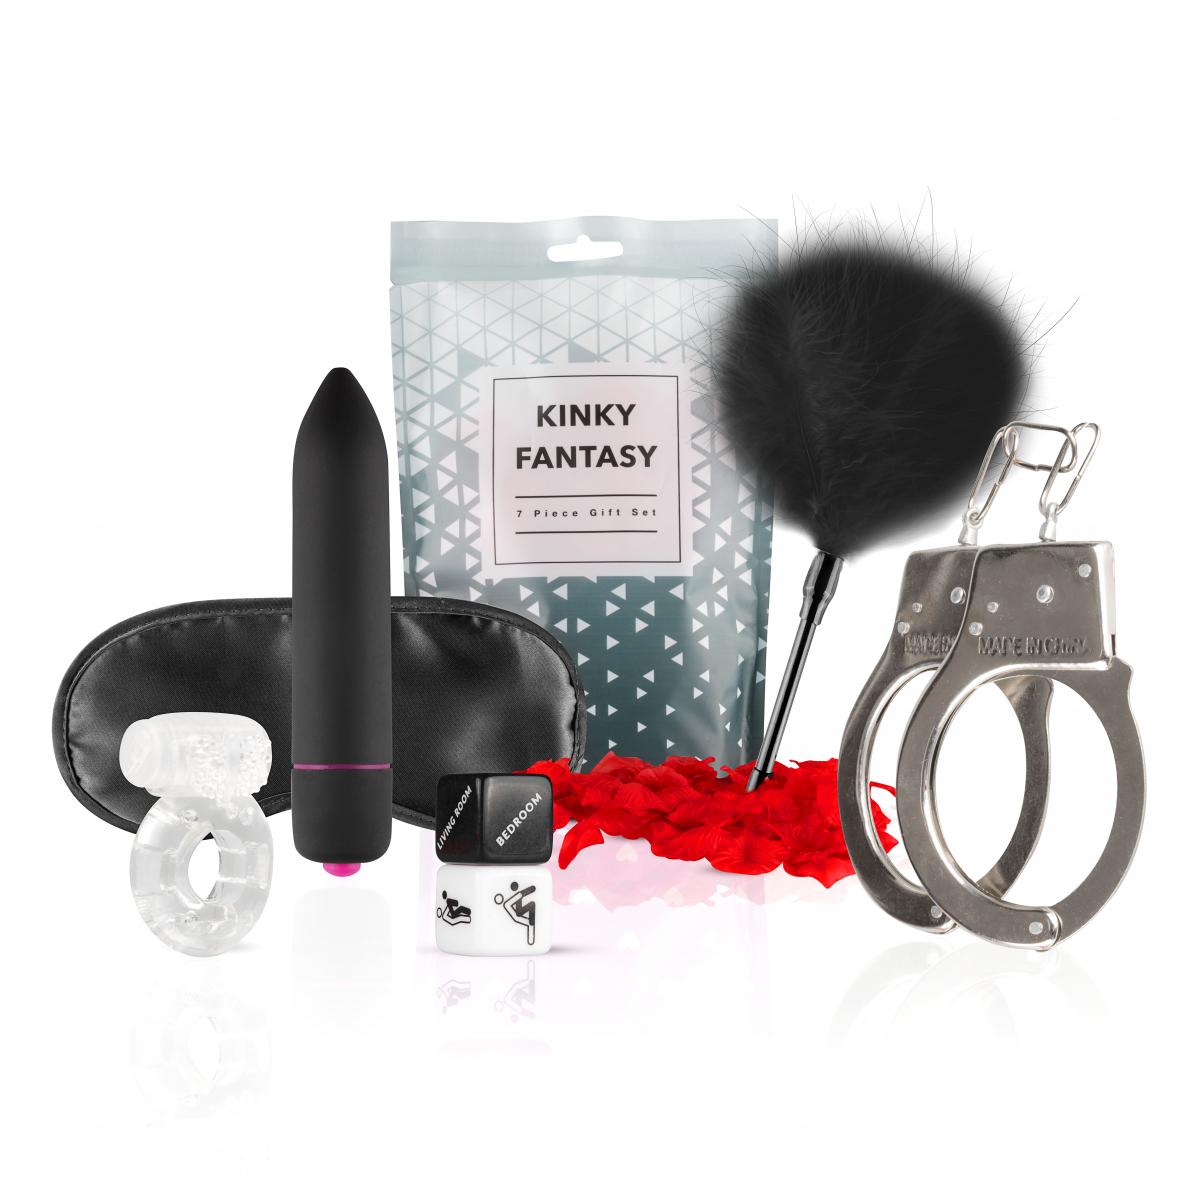 Loveboxxx - Kinky Fantasy Gift Set